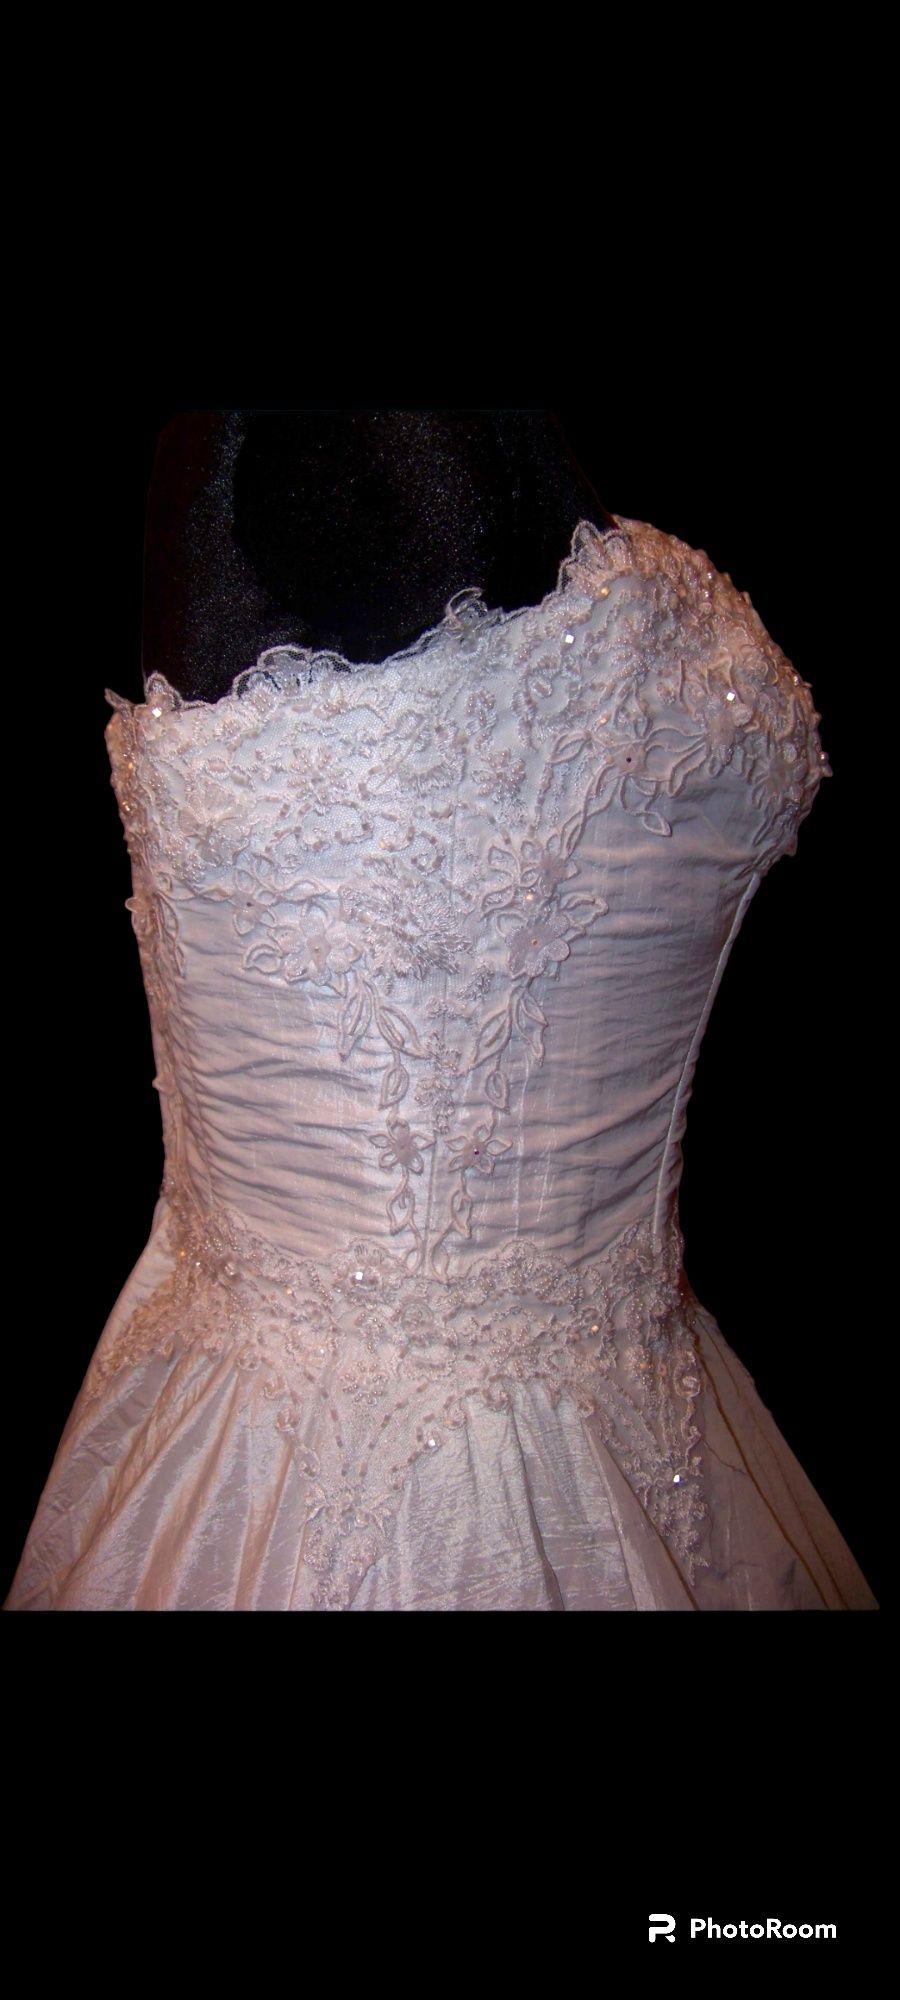 suknia ślubna unikat designerska ręcznie szyta wartości 8000 zł